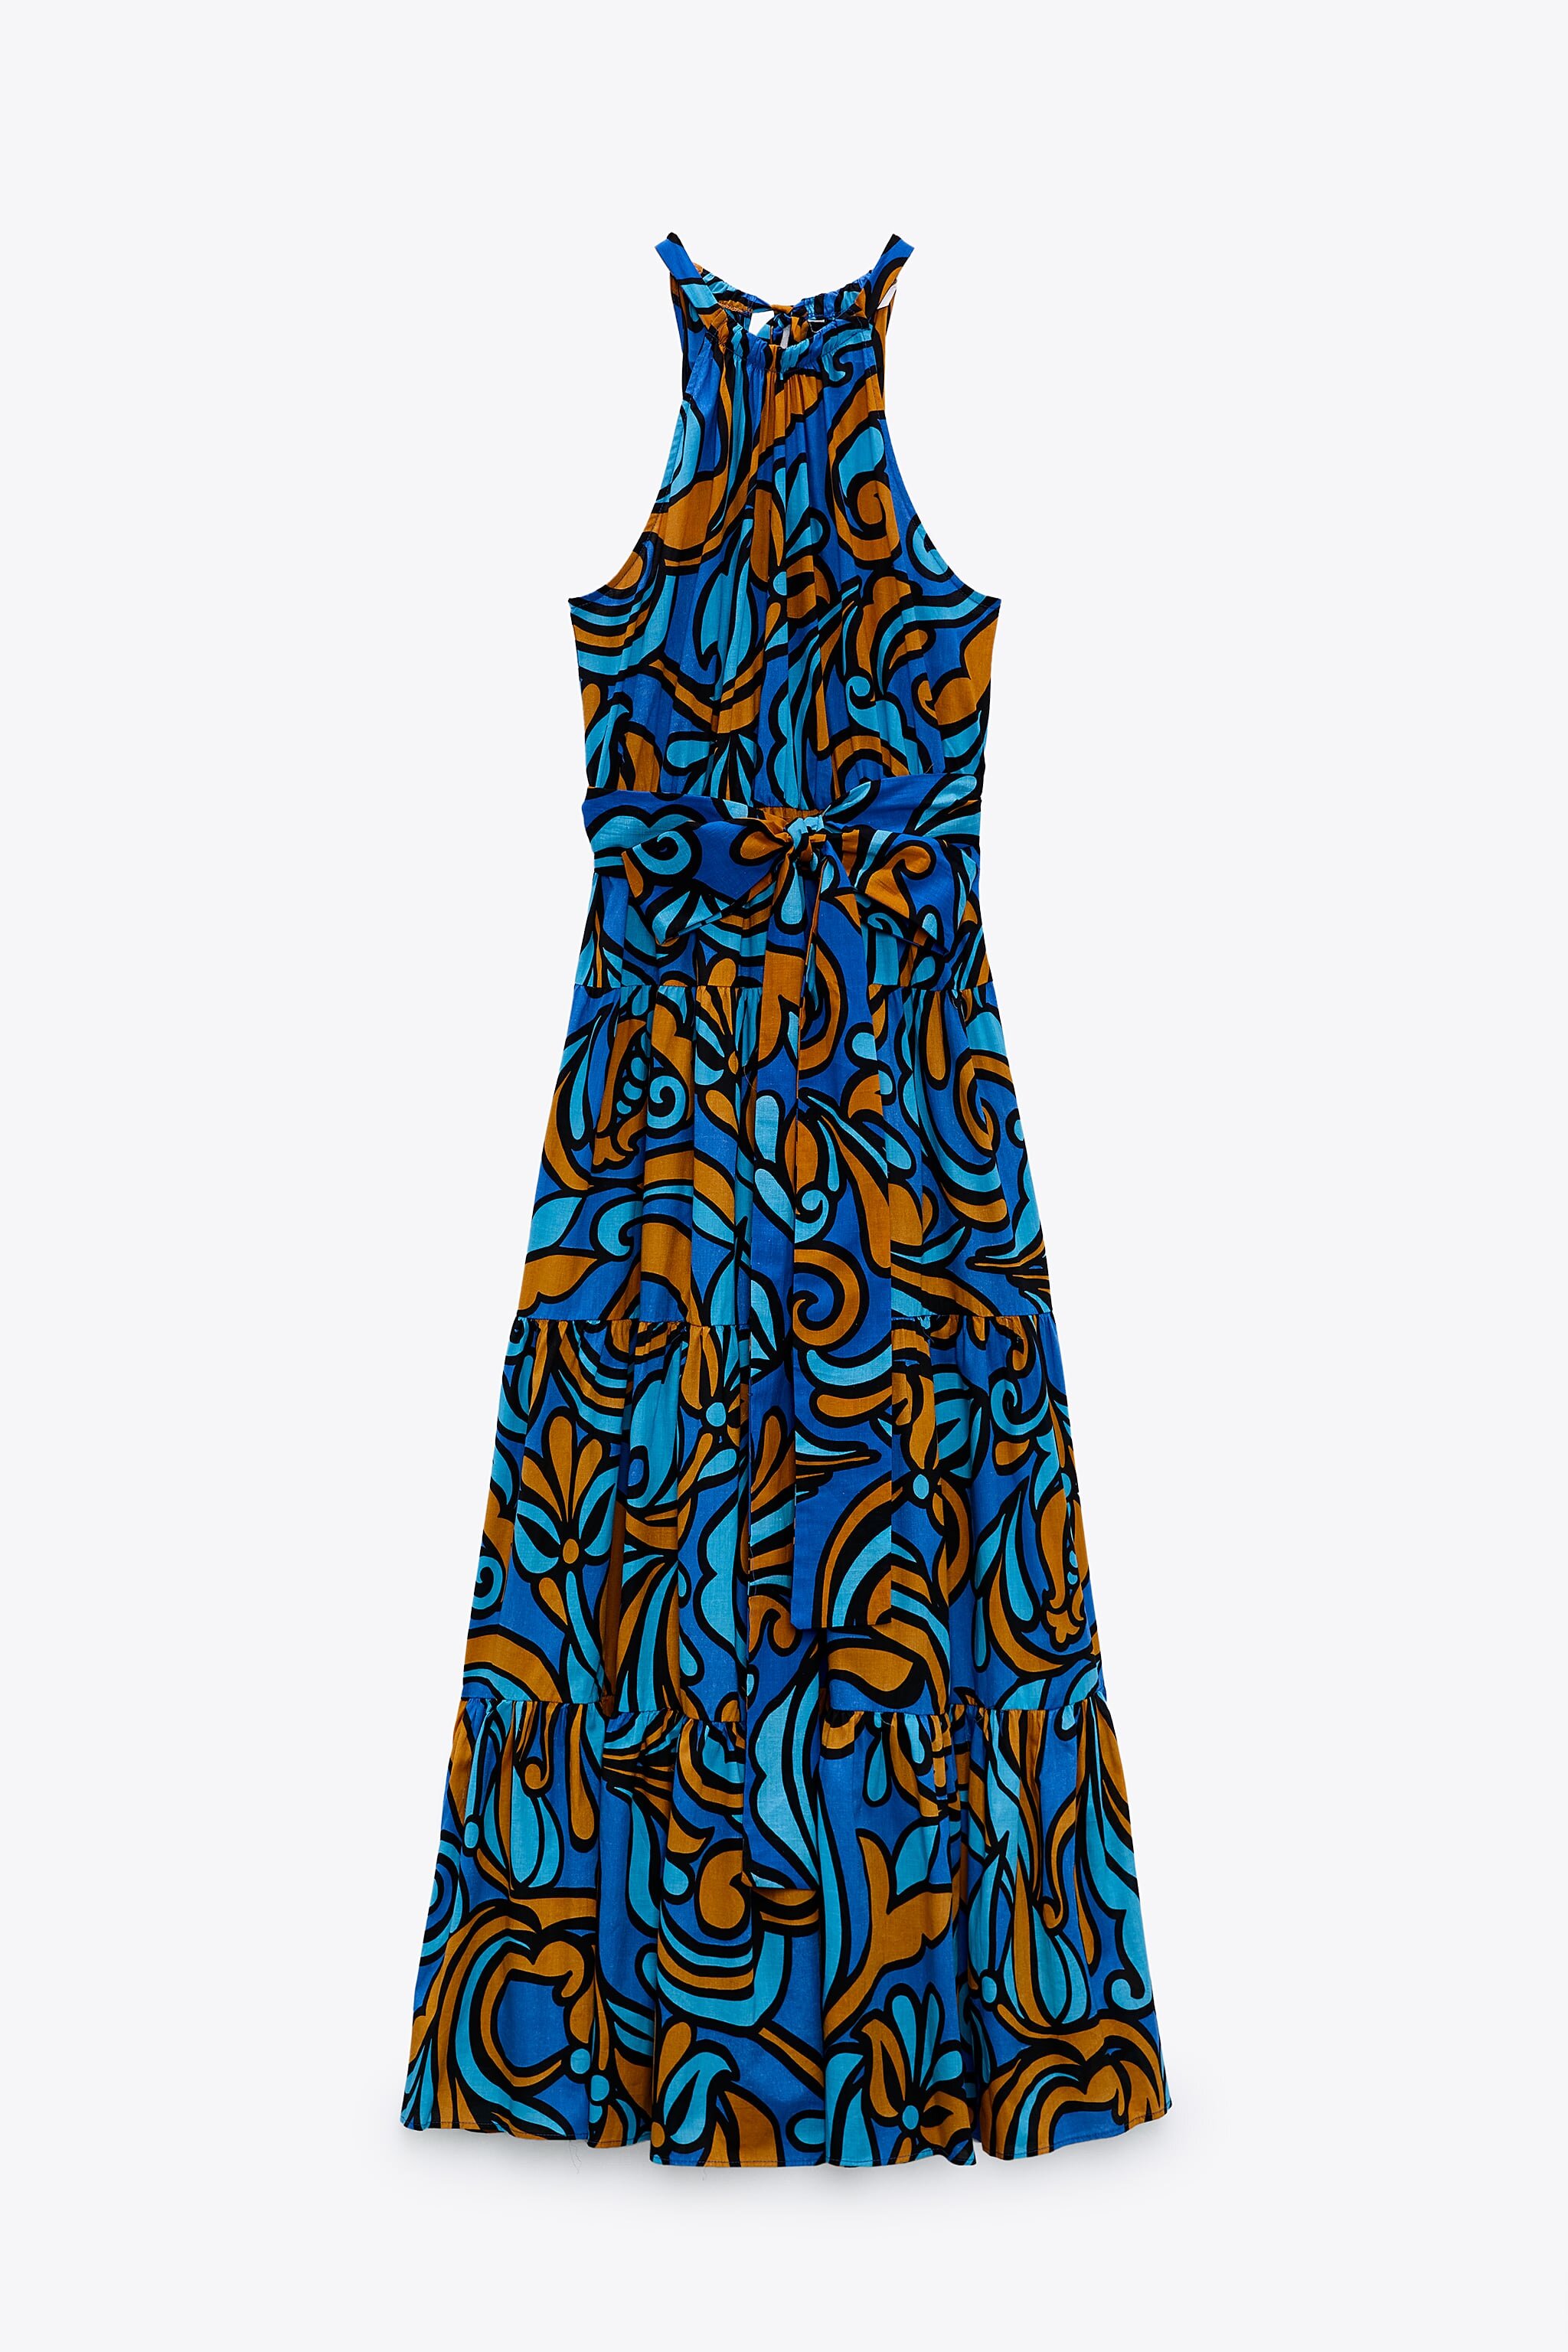 Printed Dress with Handbag, ₱3,995